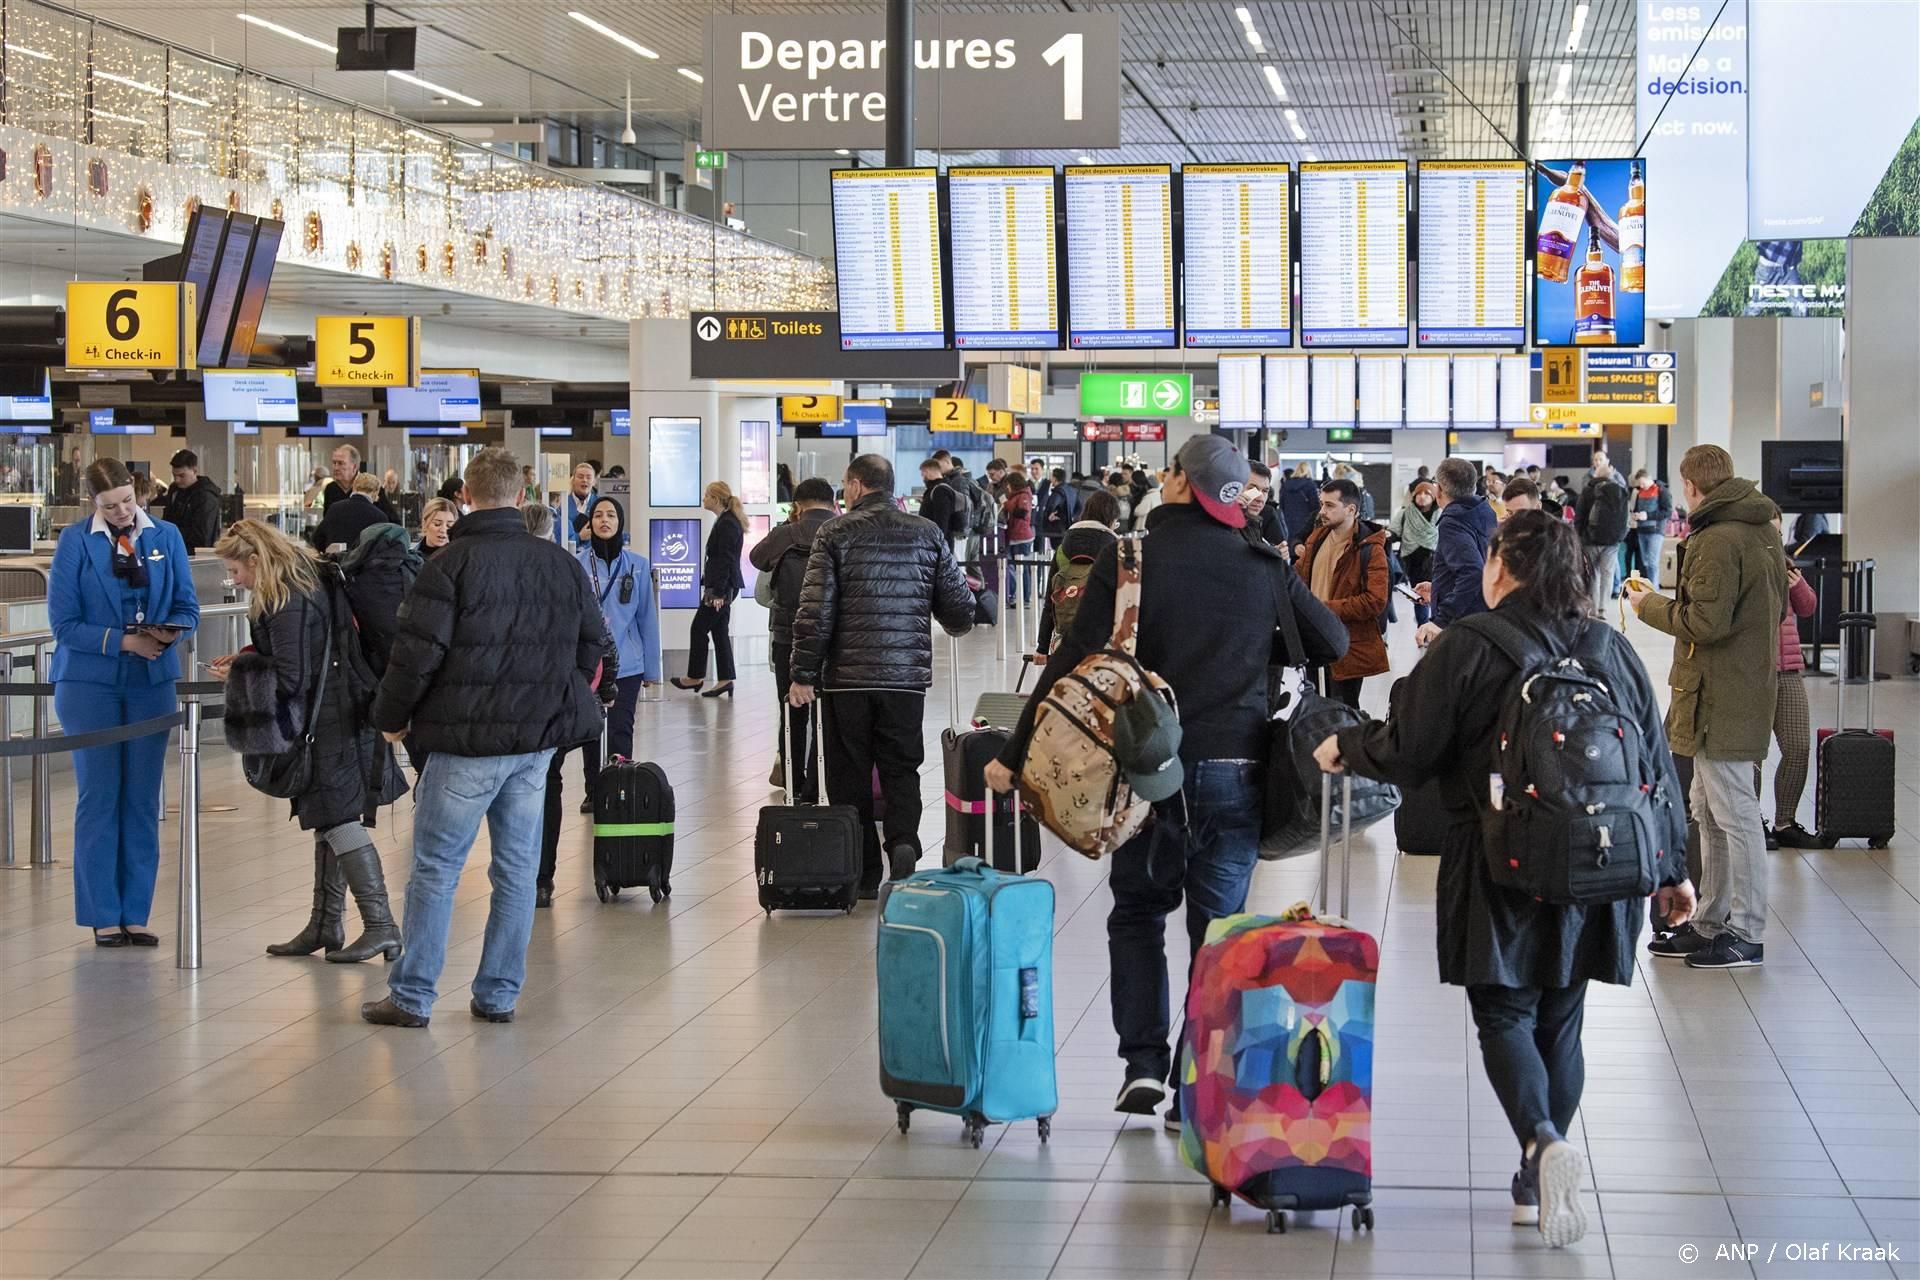 2023-01-18 10:58:29 SCHIPHOL - Reizigers op Schiphol. De luchthaven maakt bekend of er in het zomerseizoen nog steeds een beperking zal gelden voor het aantal reizigers dat van de luchthaven mag vertrekken. ANP OLAF KRAAK